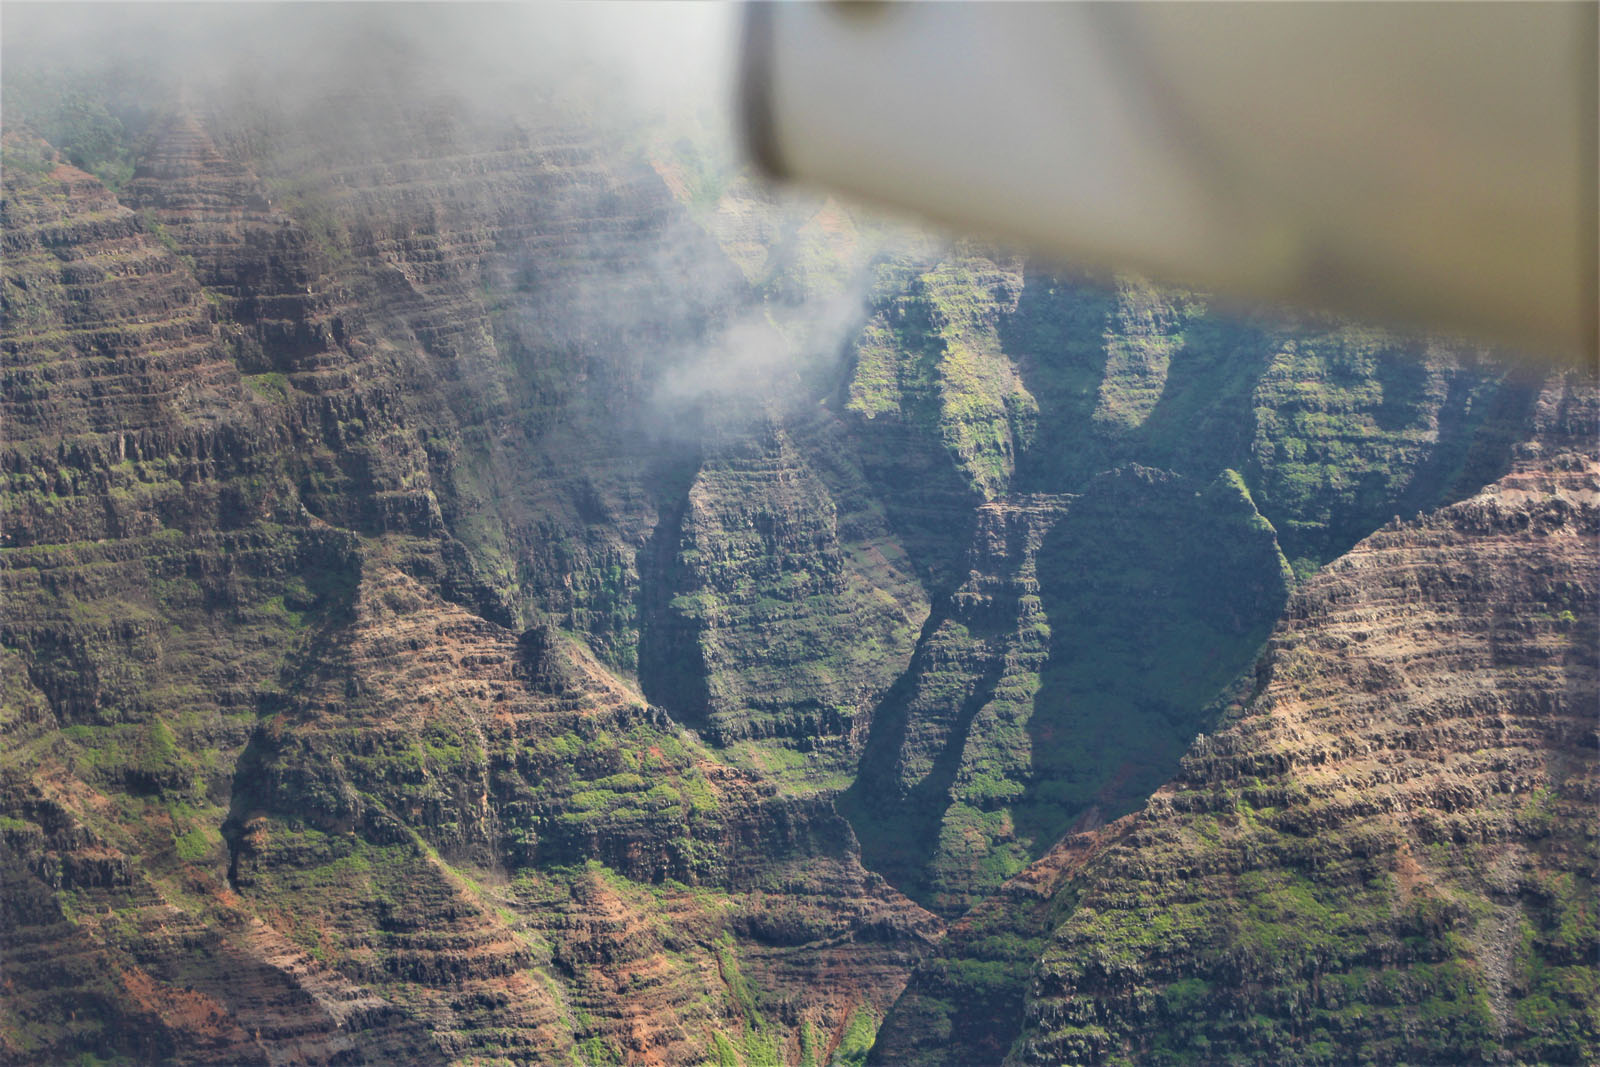 Waimea Canyon by Kauai Plane Tour